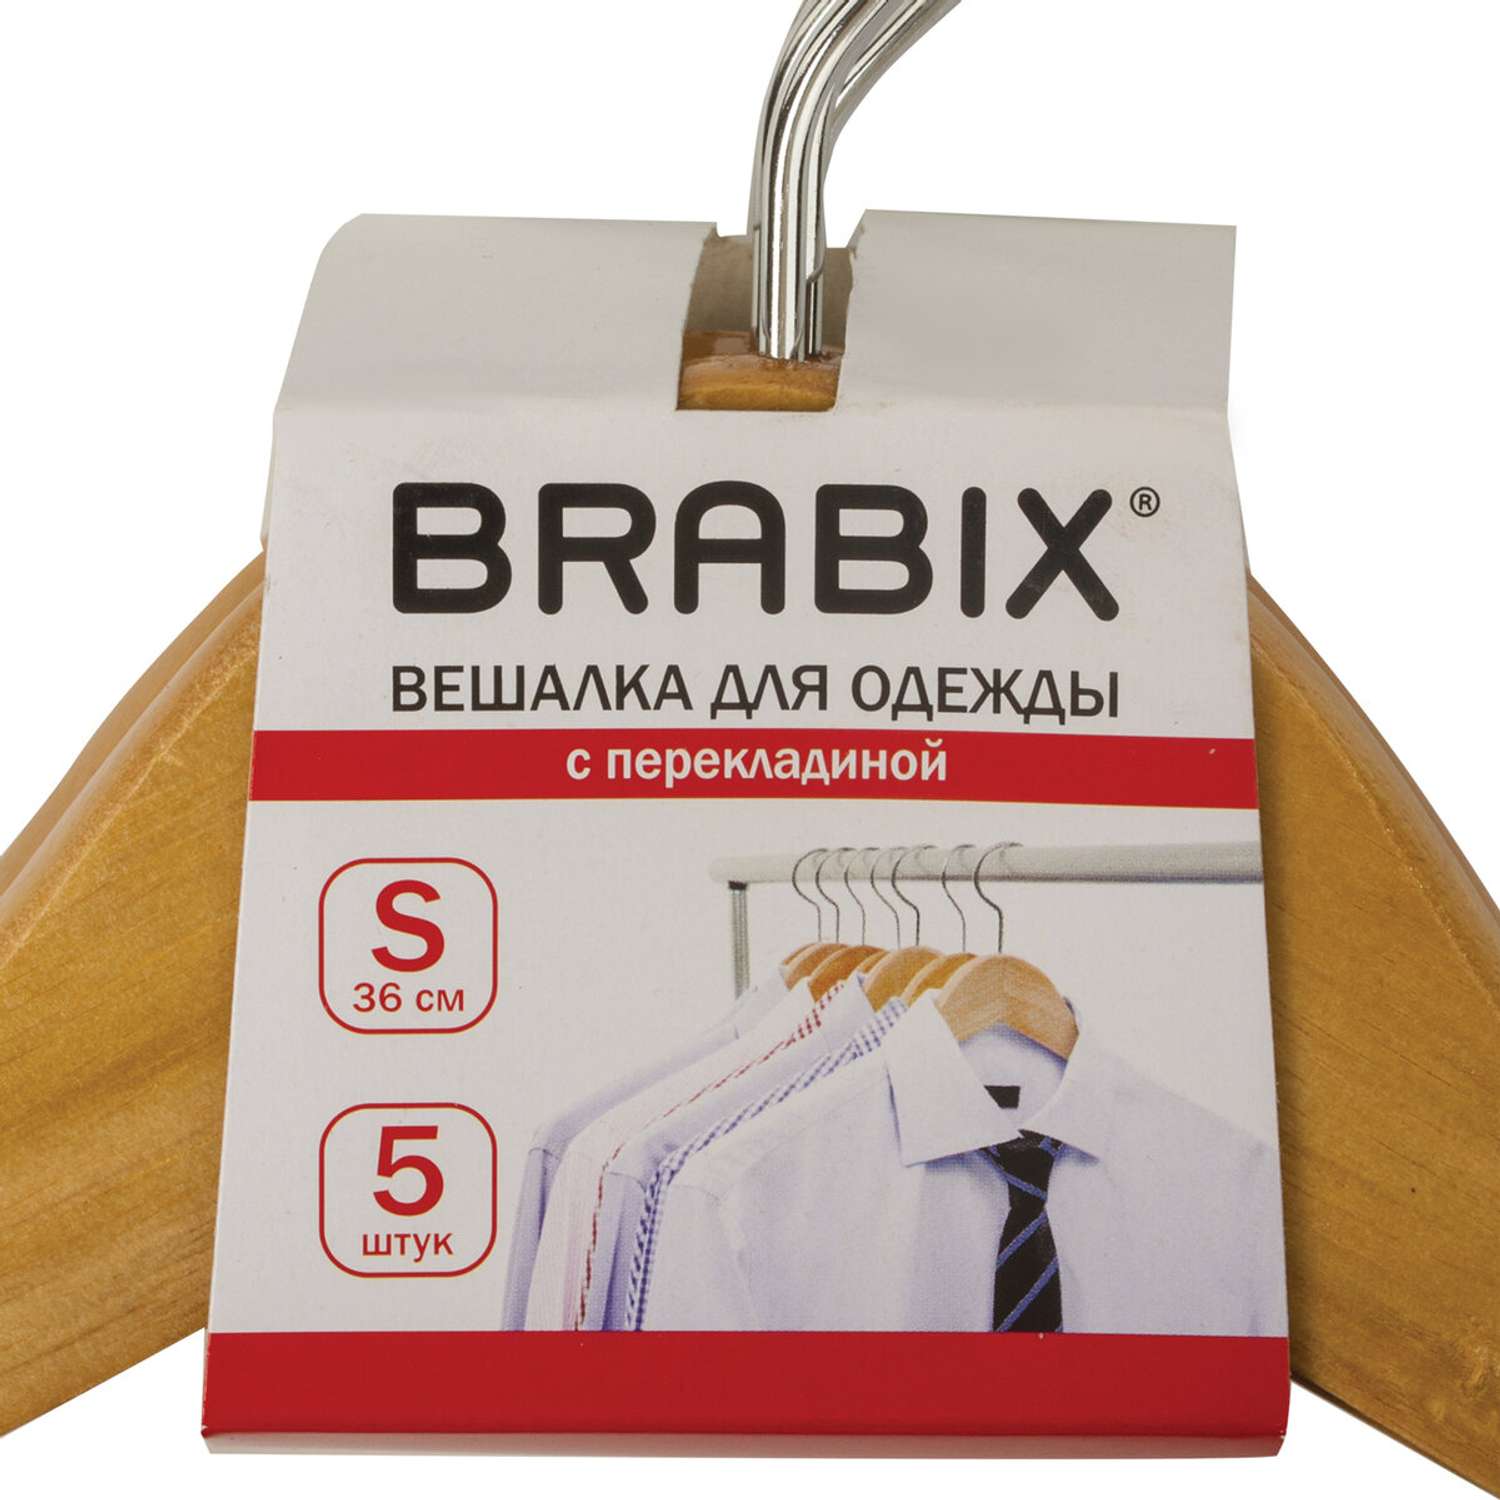 Вешалки Brabix для одежды деревянные 5шт перекладина цвет сосна размер 36-40 - фото 6